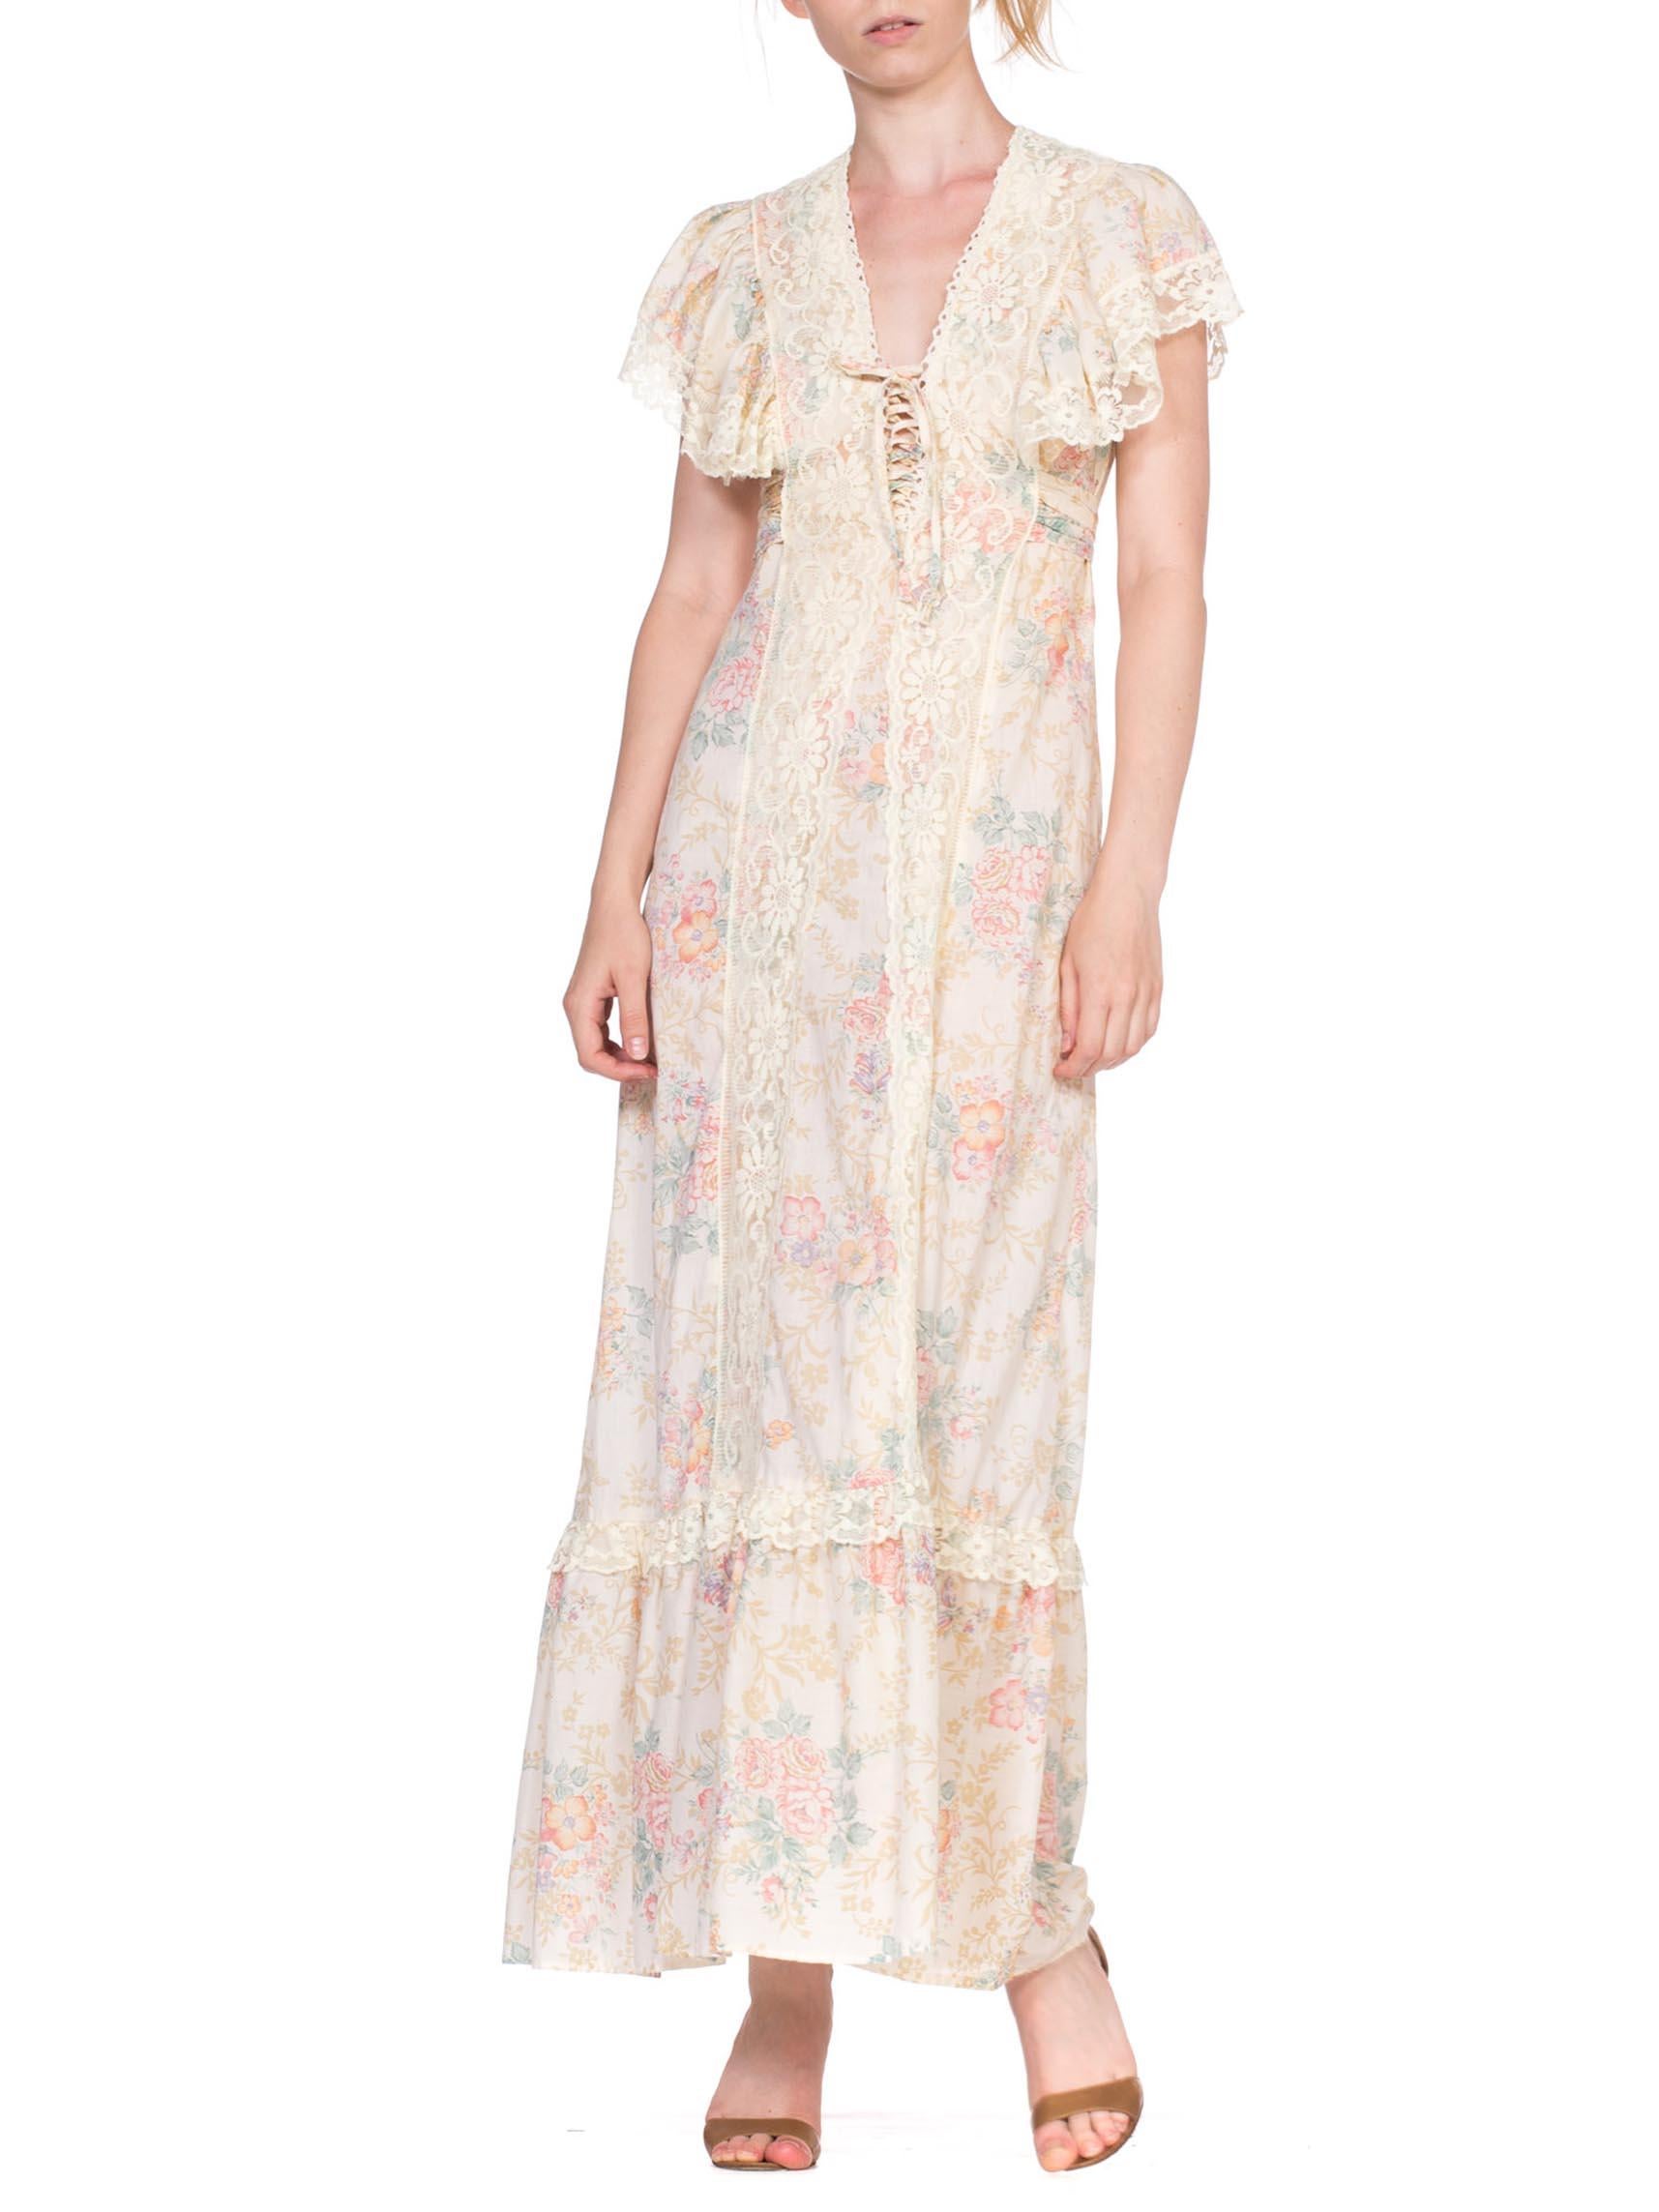 1970's Victorian Floral Cotton & Lace Dress 3